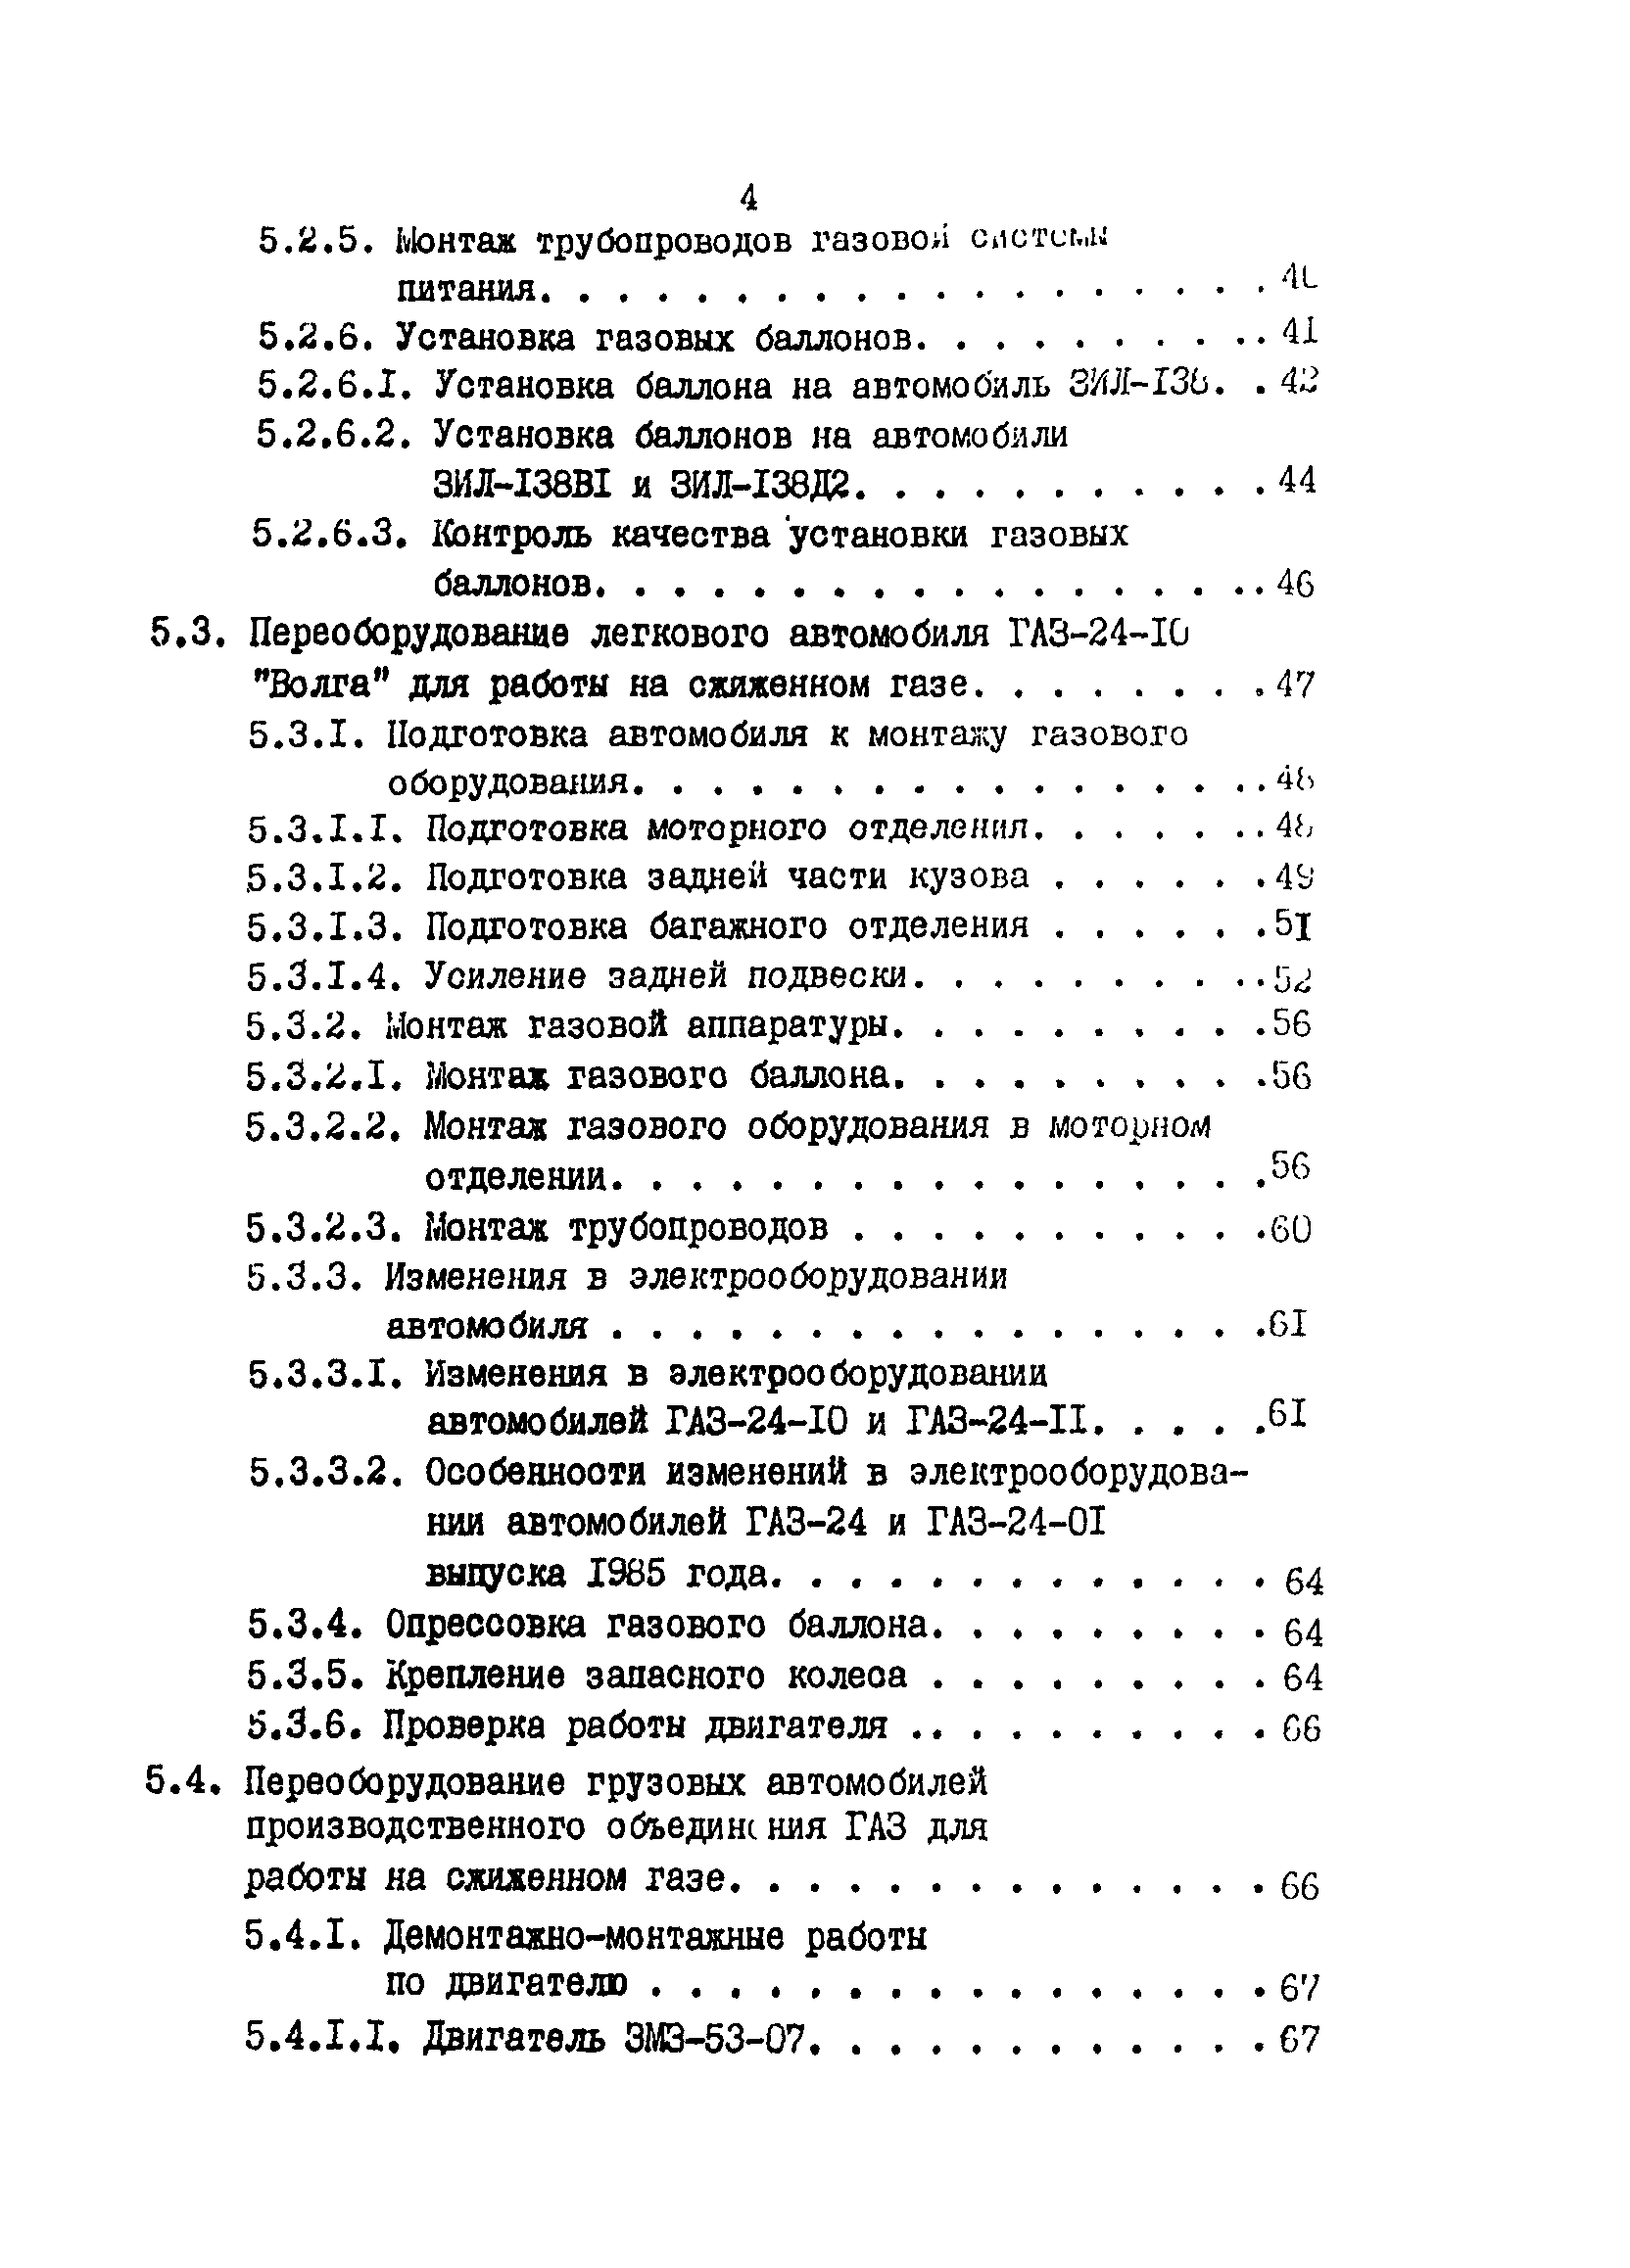 РД 200-РСФСР-12-0176-87